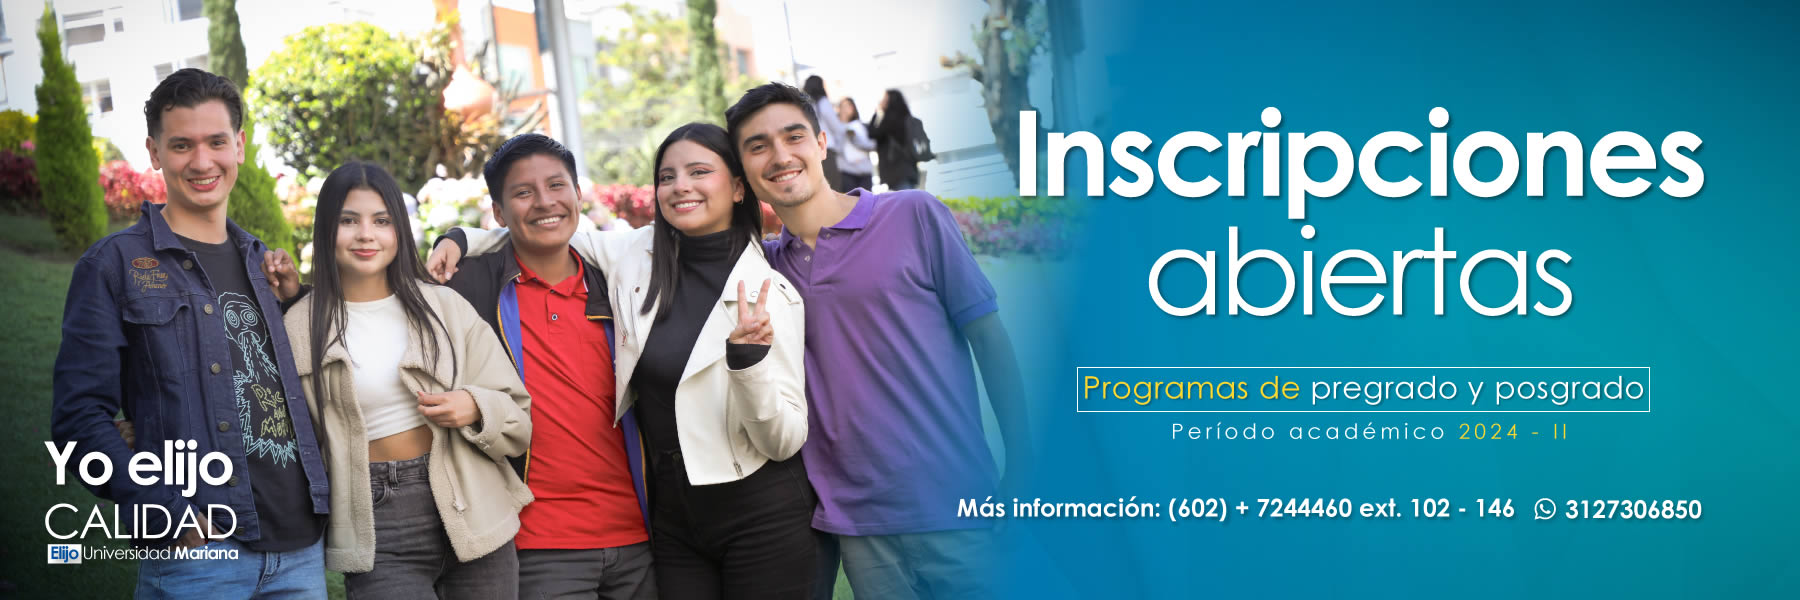 Universidades en Colombia - Programa profesionales, técnicos, tecnológicos, posgrados, maestrías y doctorados